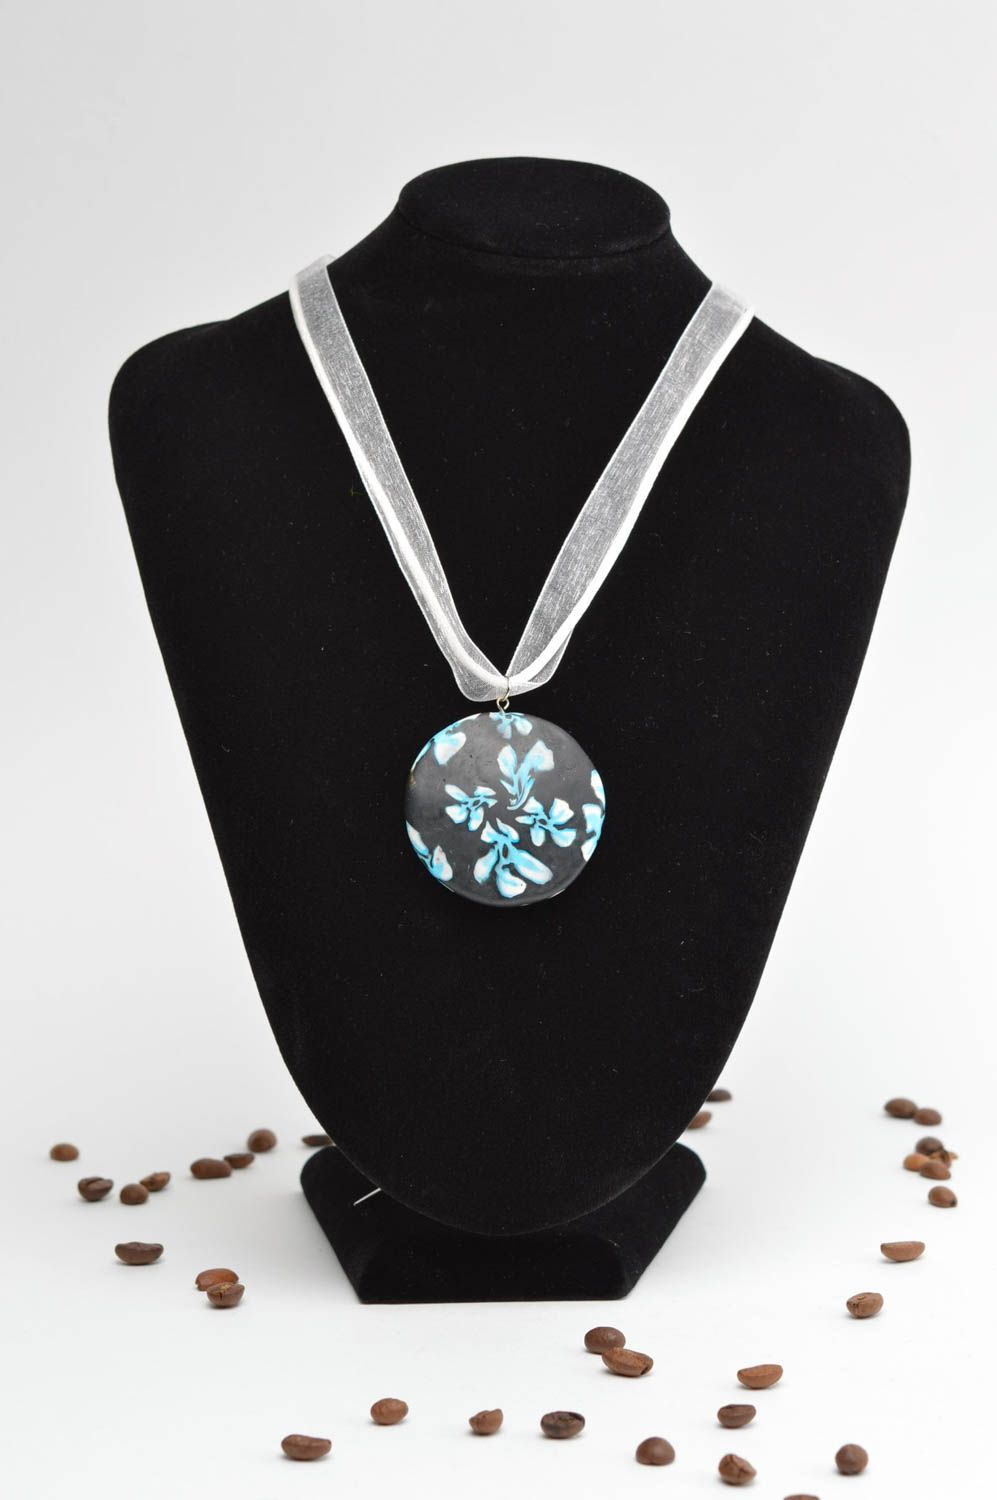 Beautiful handmade plastic neck pendant stylish glass pendant fashion jewelry photo 1